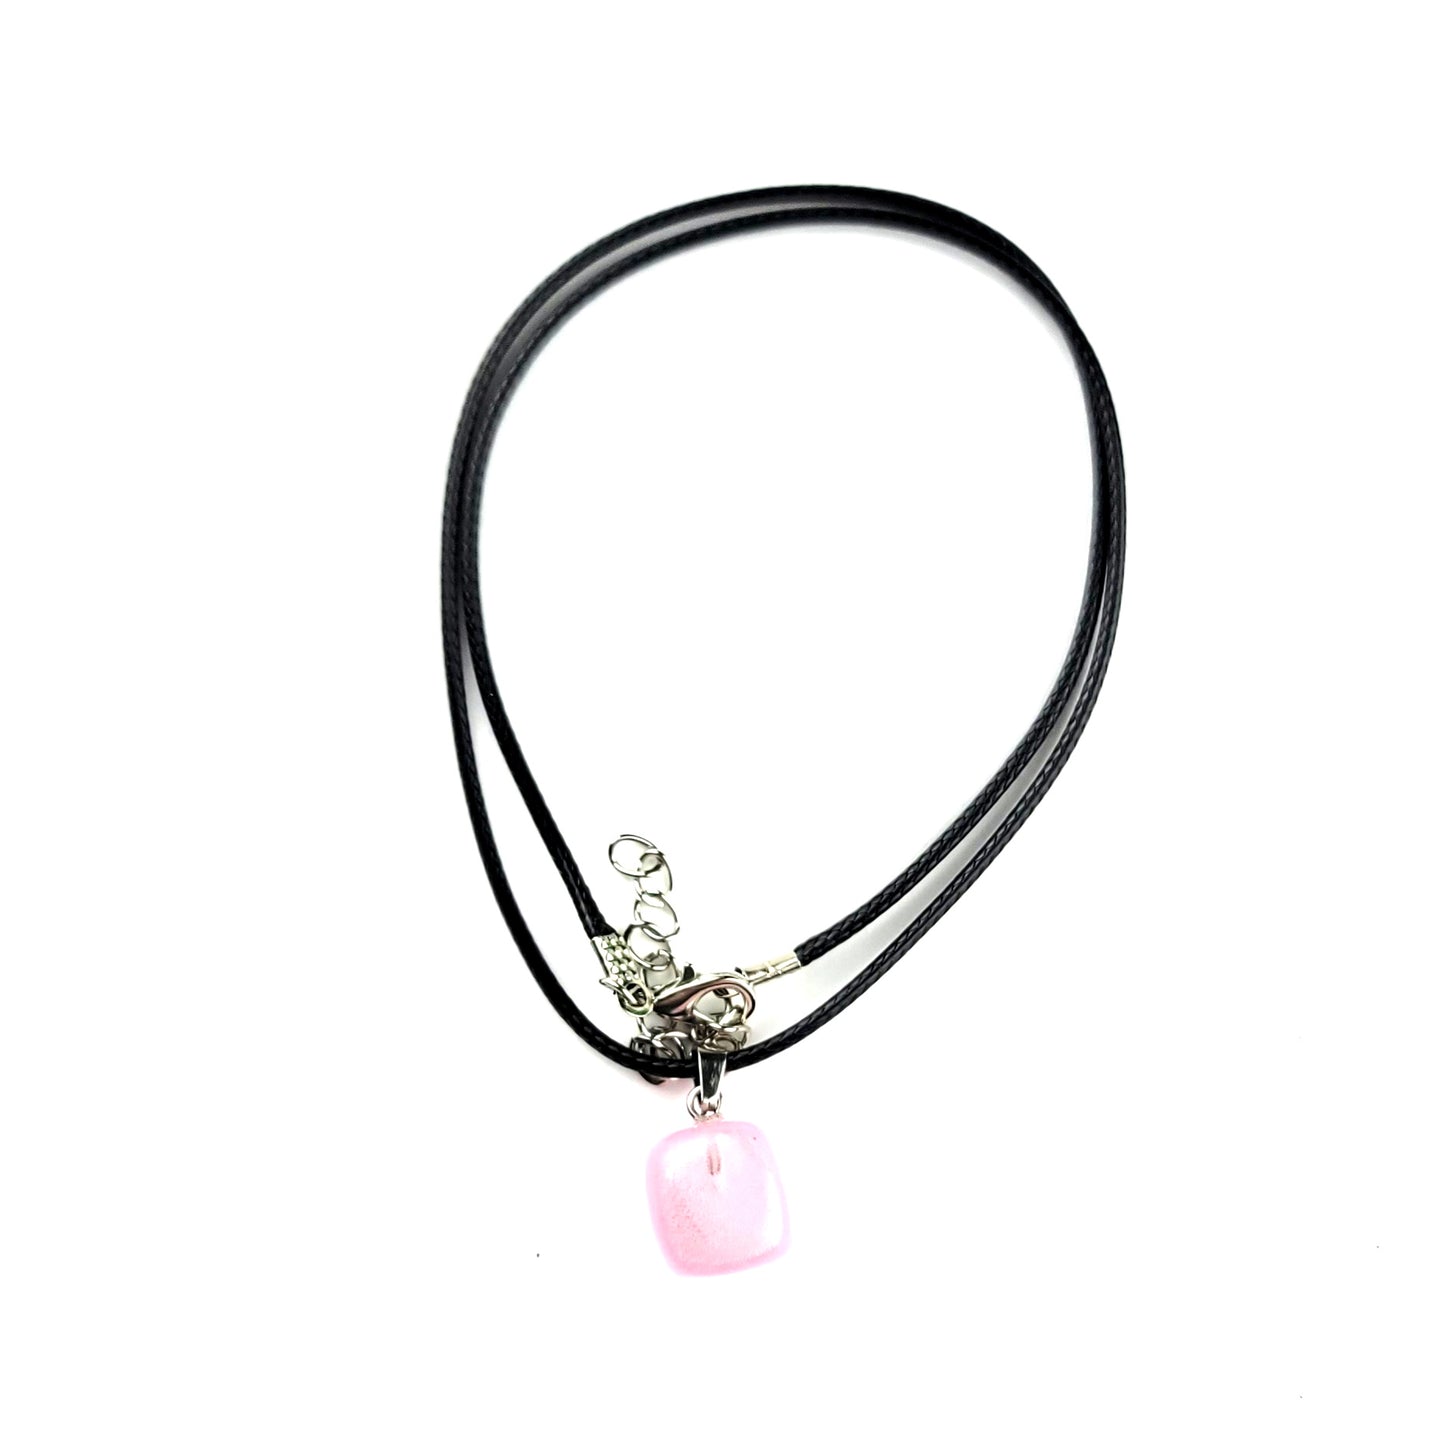 Gemstone Drop Necklace